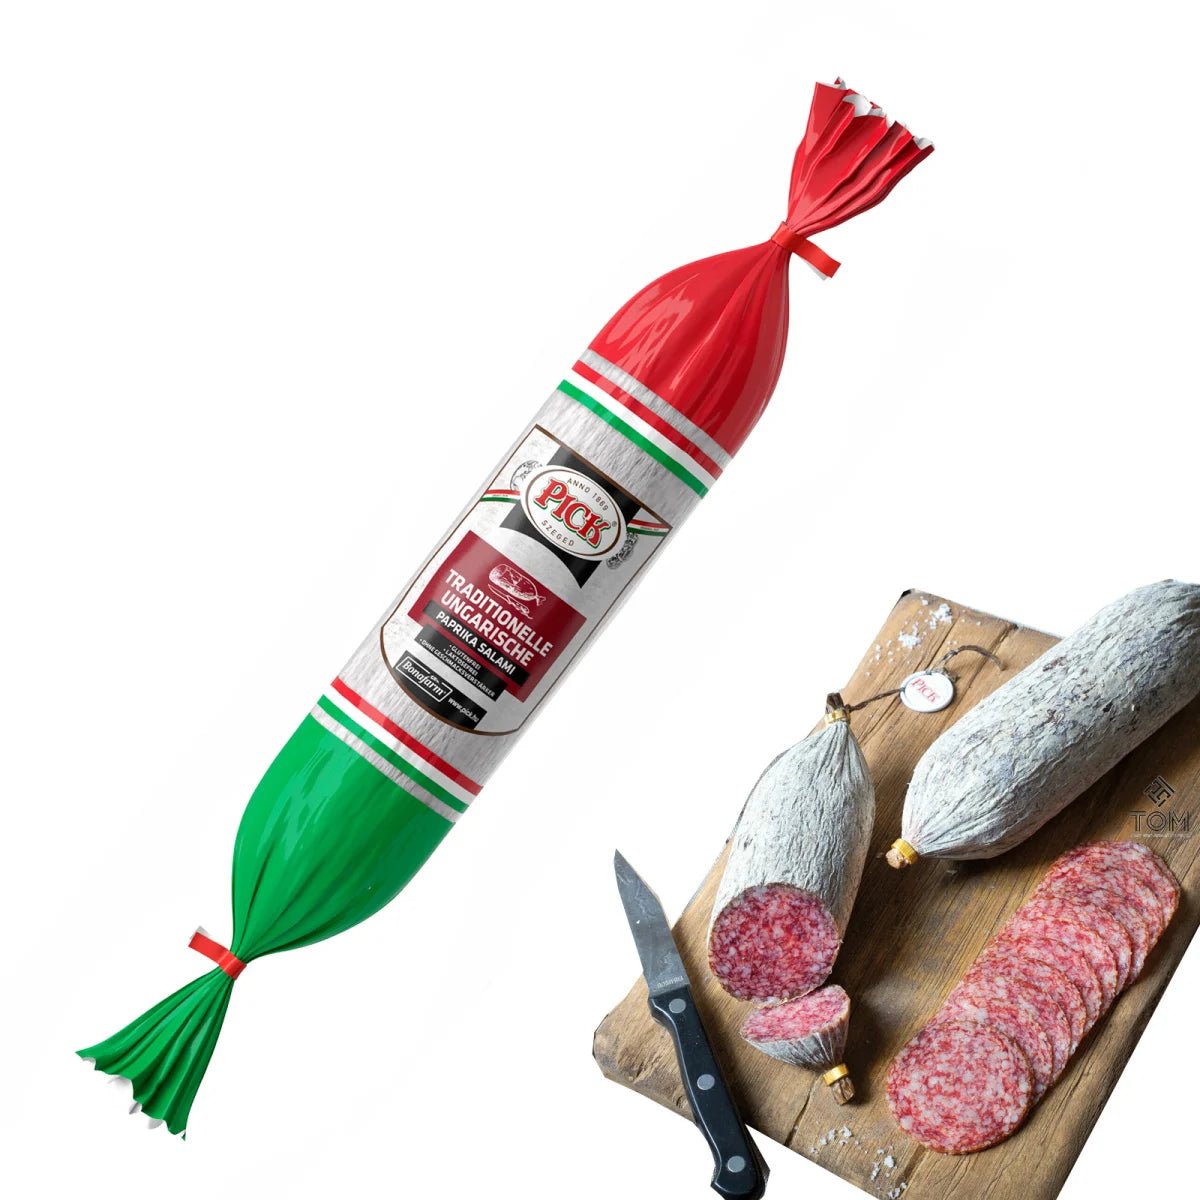 PICK original ungarische Paprika Salami Stange HU - 1 x 400 g Stück - Feinkost Delikatessen: Wurst und Fleisch Spezialitäten | Wurst-Fleisch.com